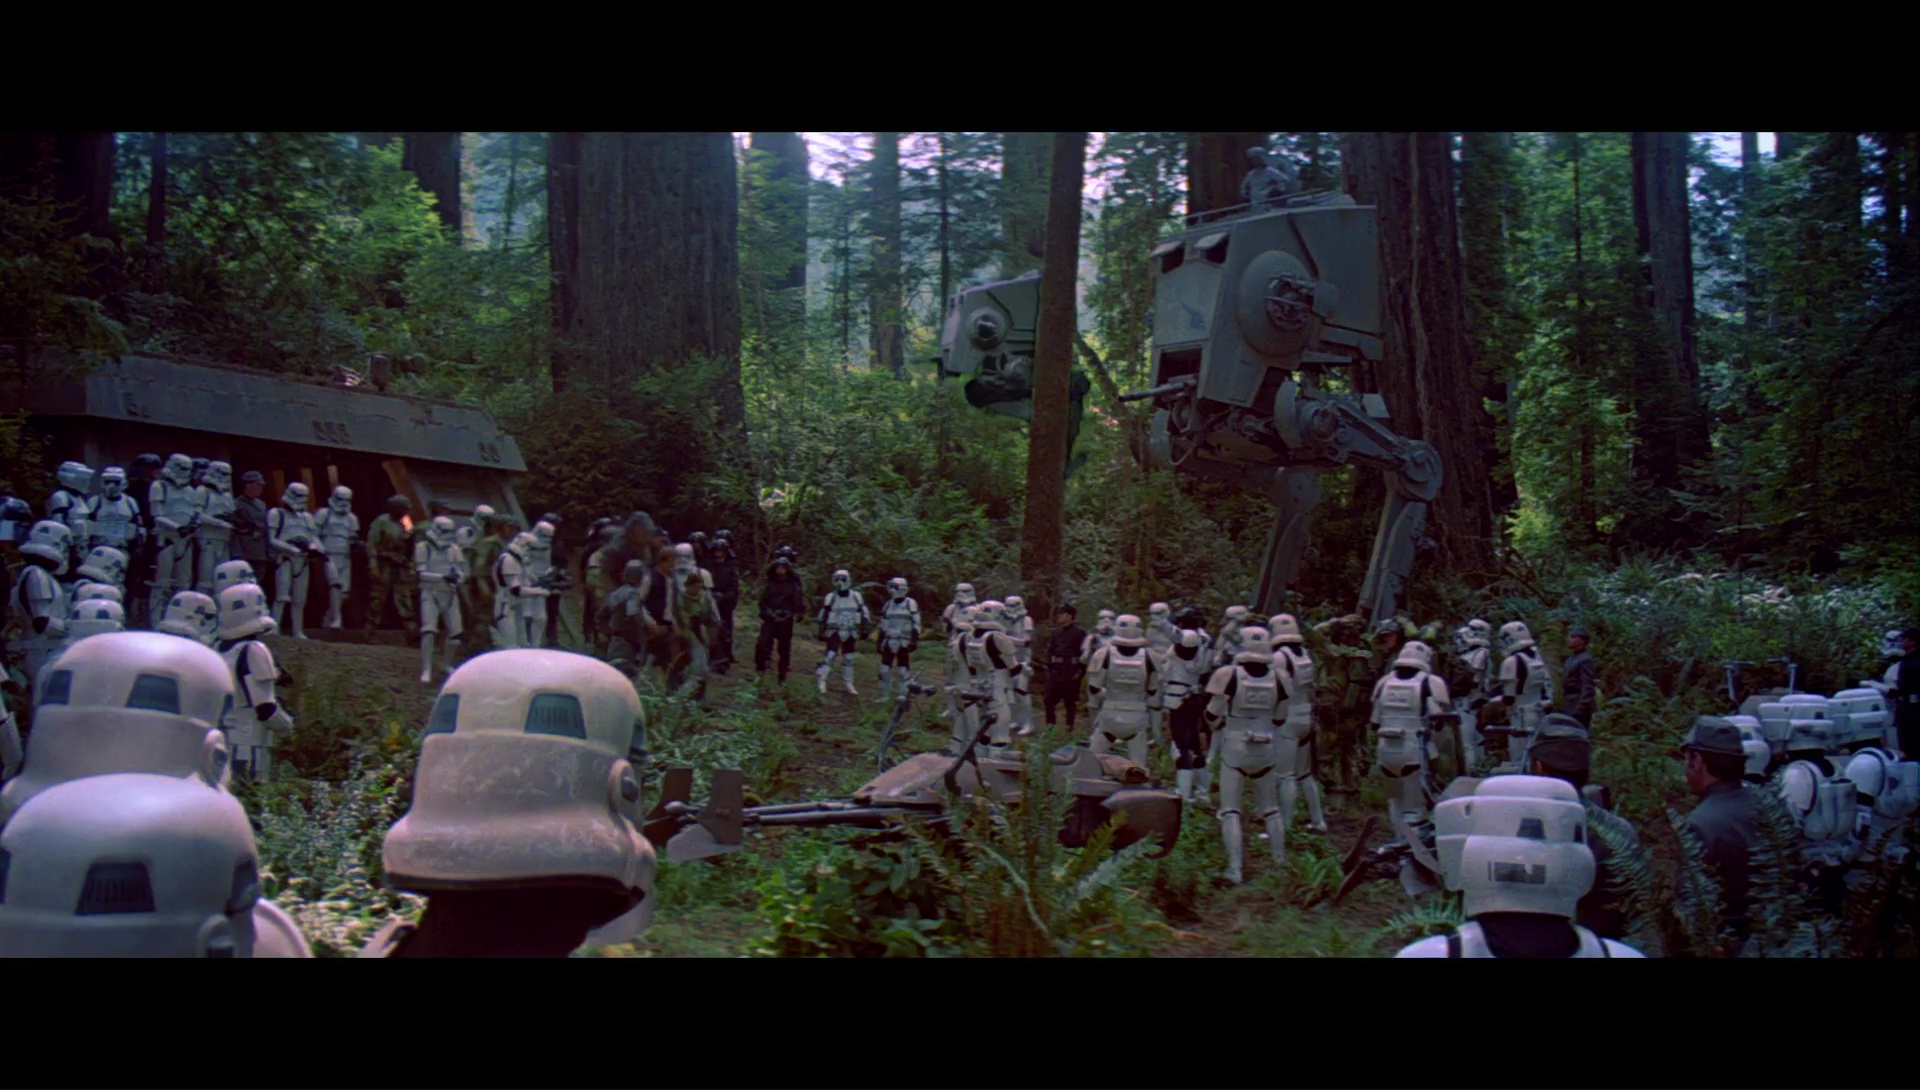 Star Wars Episodio VI 1080p Lat-Cast-Ing 5.1 (1983) PRB3y7wj_o